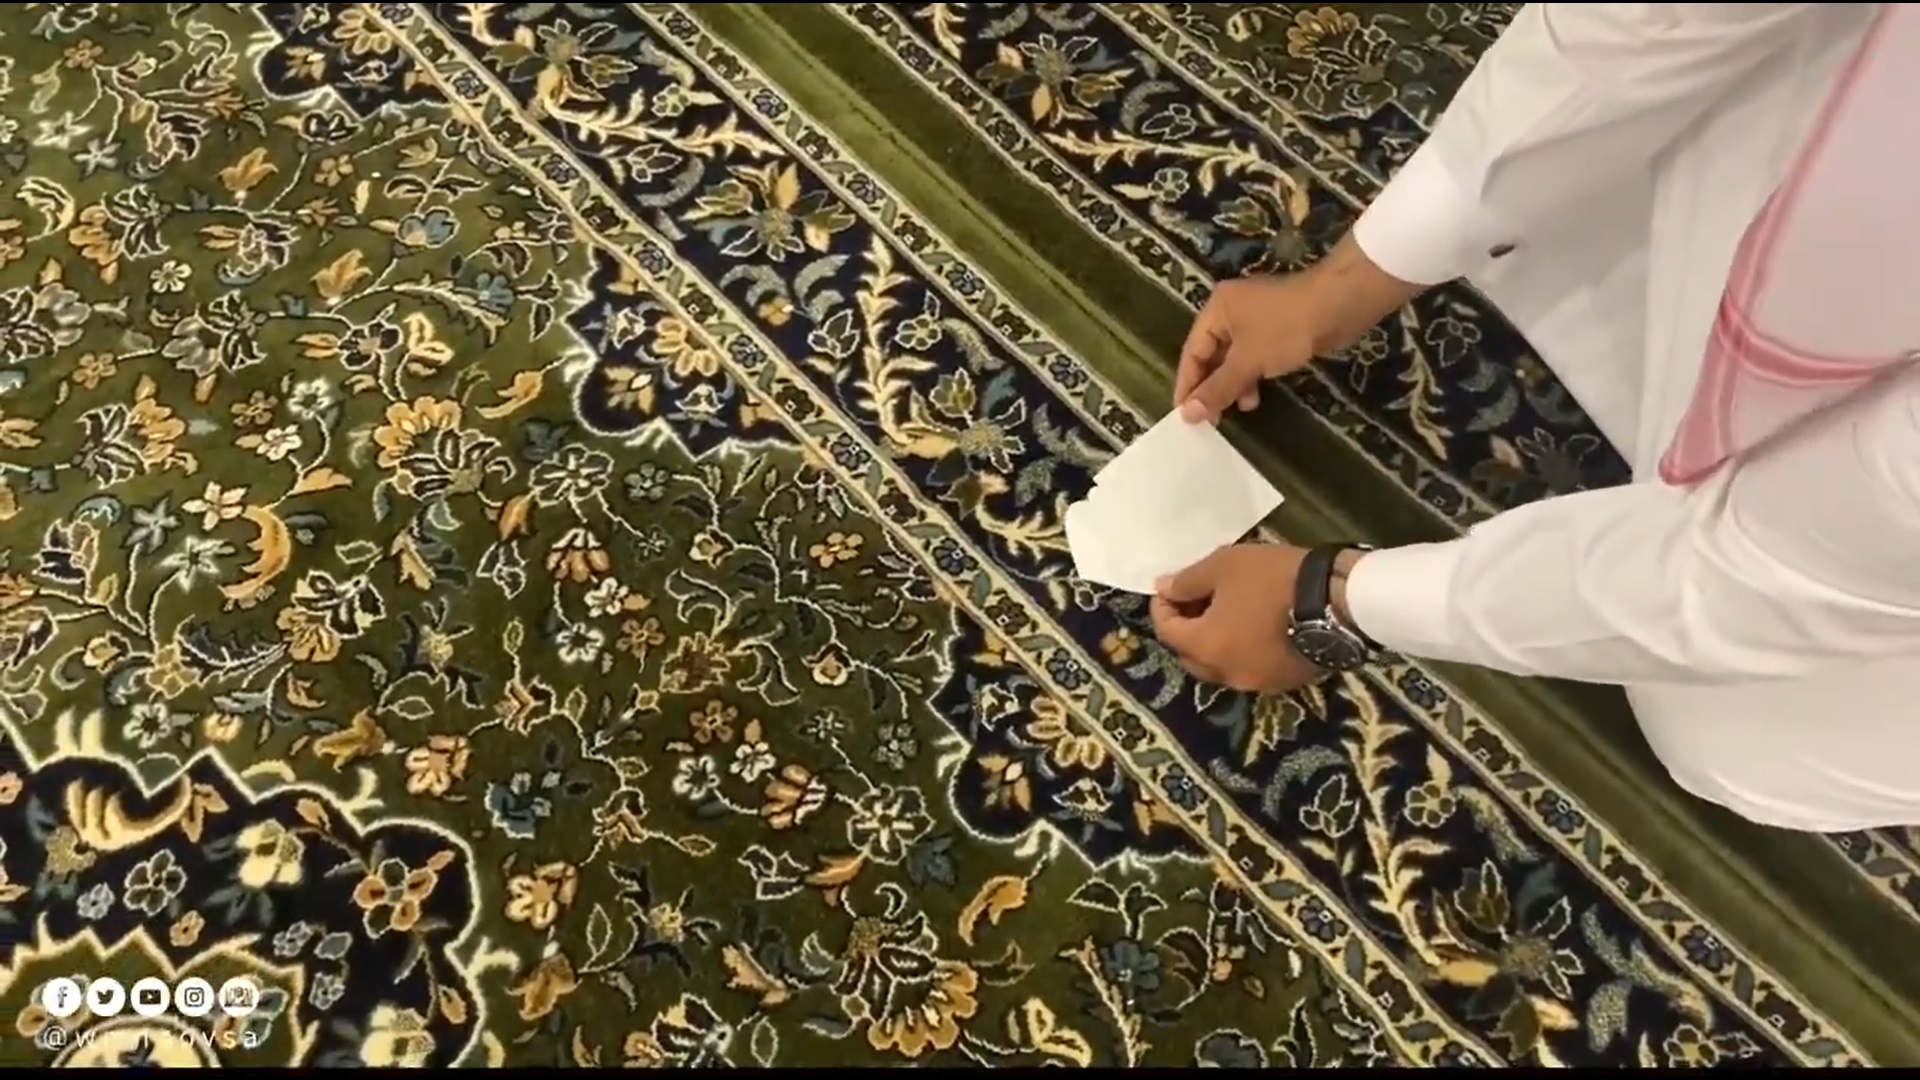 شاهد .. إعادة وضع علامات التباعد الجسدي بين المصلين في المسجد النبوي